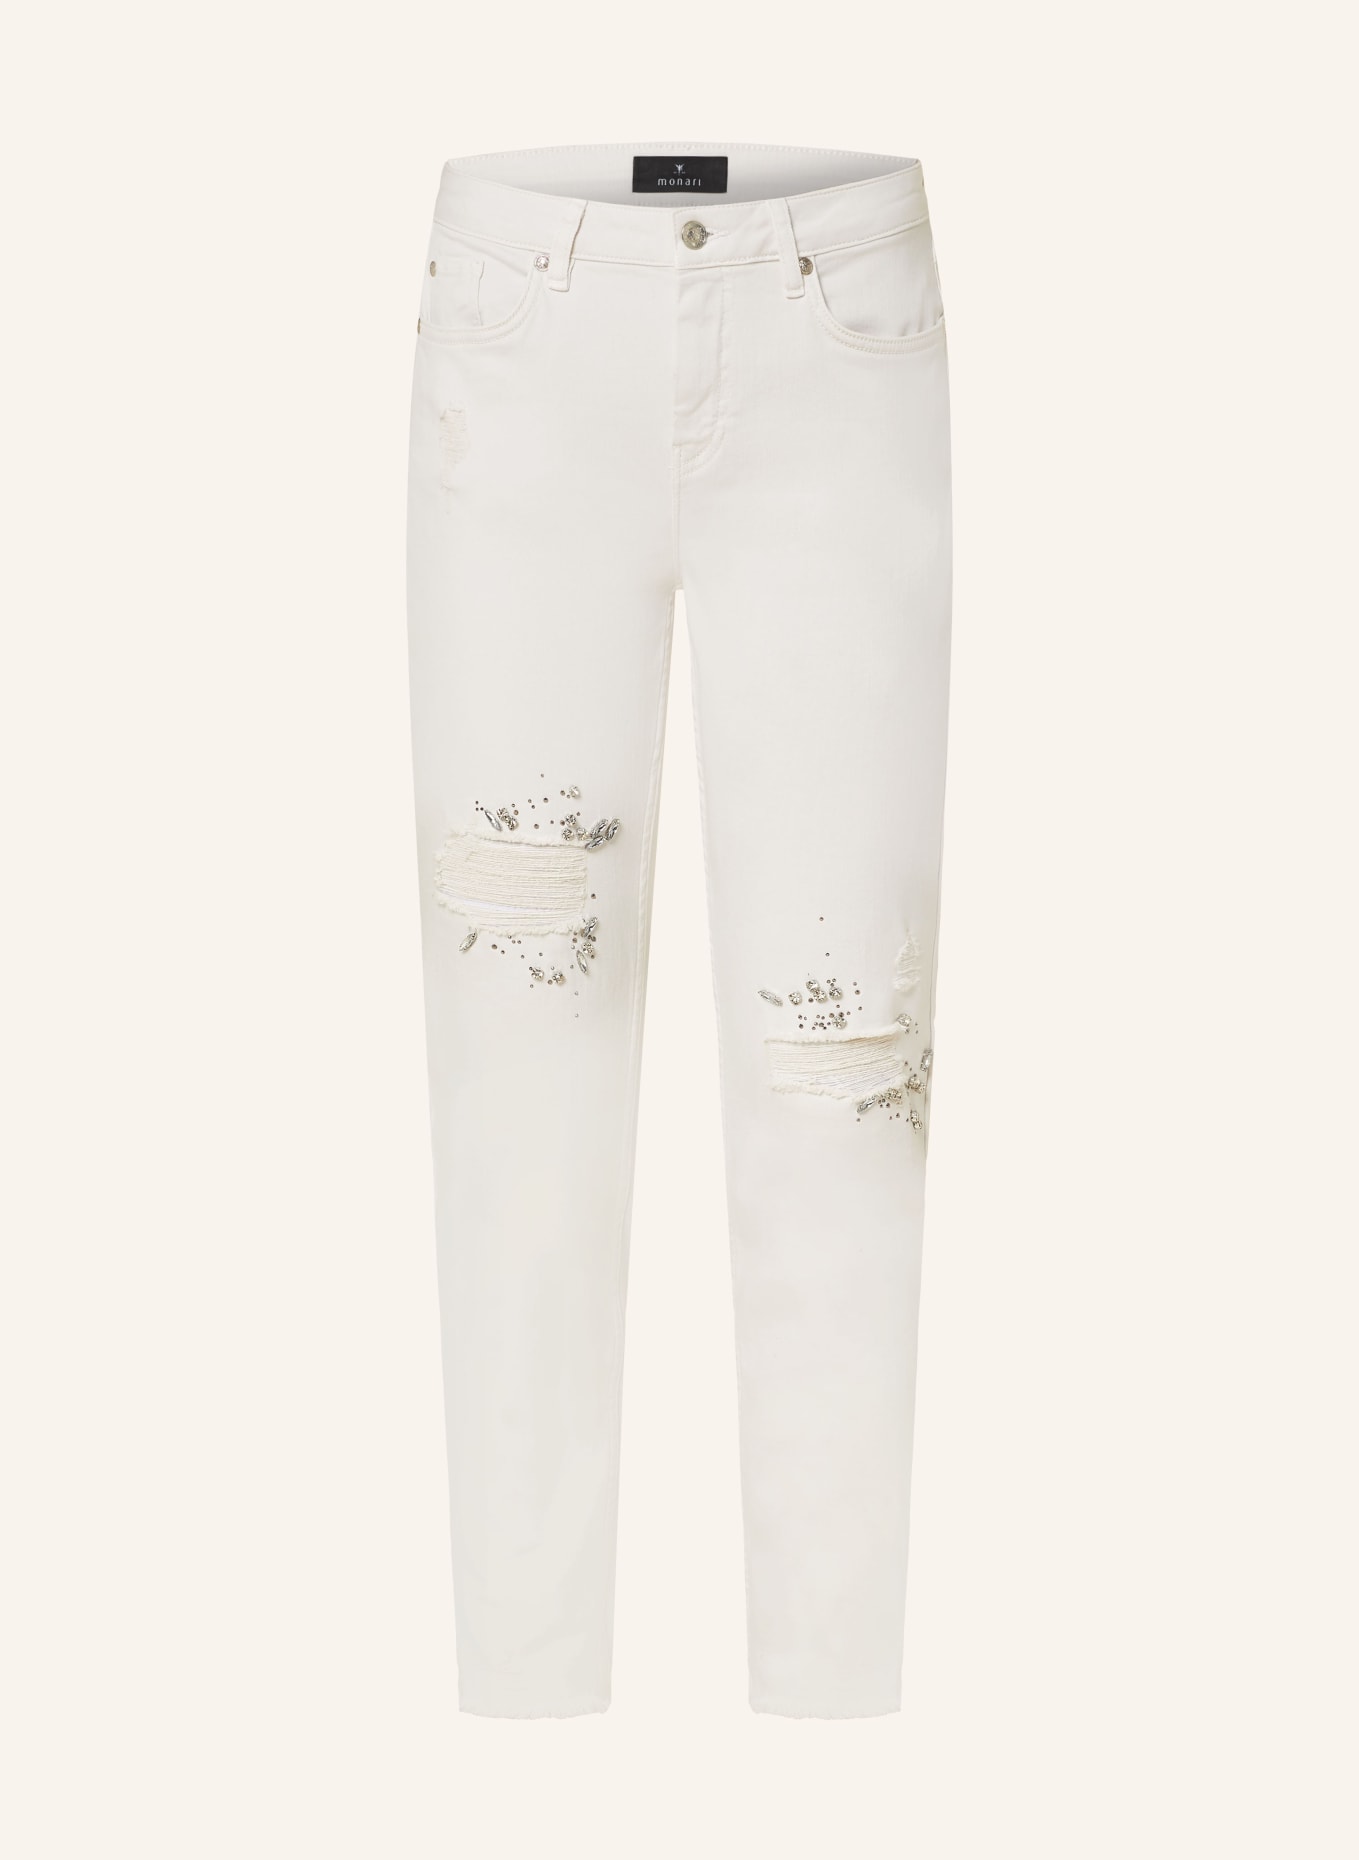 monari Skinny Jeans mit Schmucksteinen, Farbe: HELLGRAU (Bild 1)